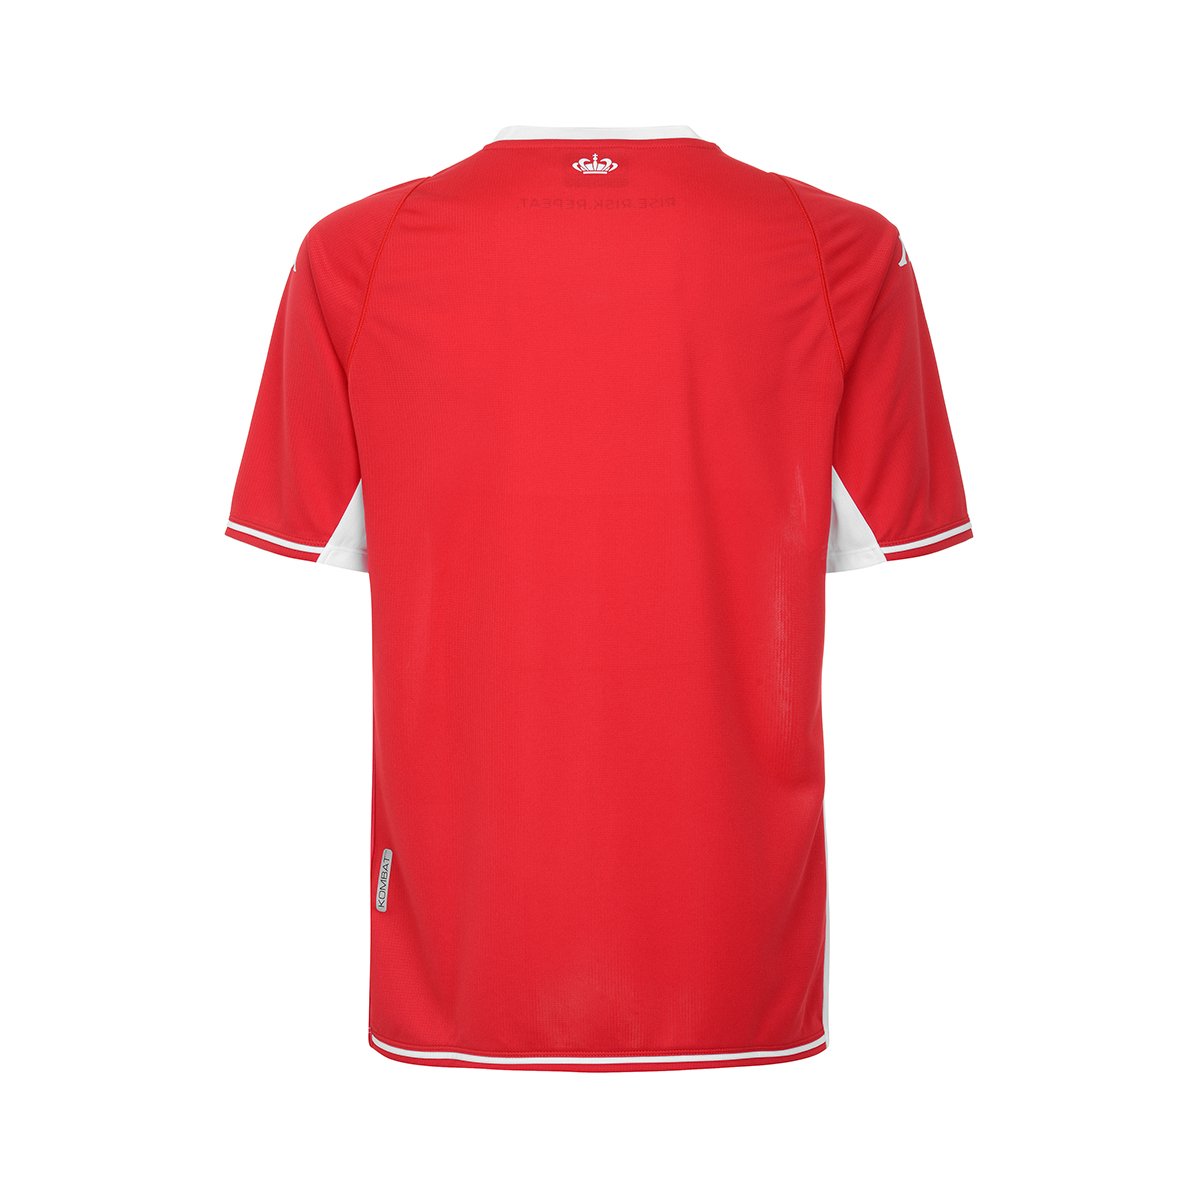 Camiseta Kombat Home AS Monaco niño Rojo - Imagen 3